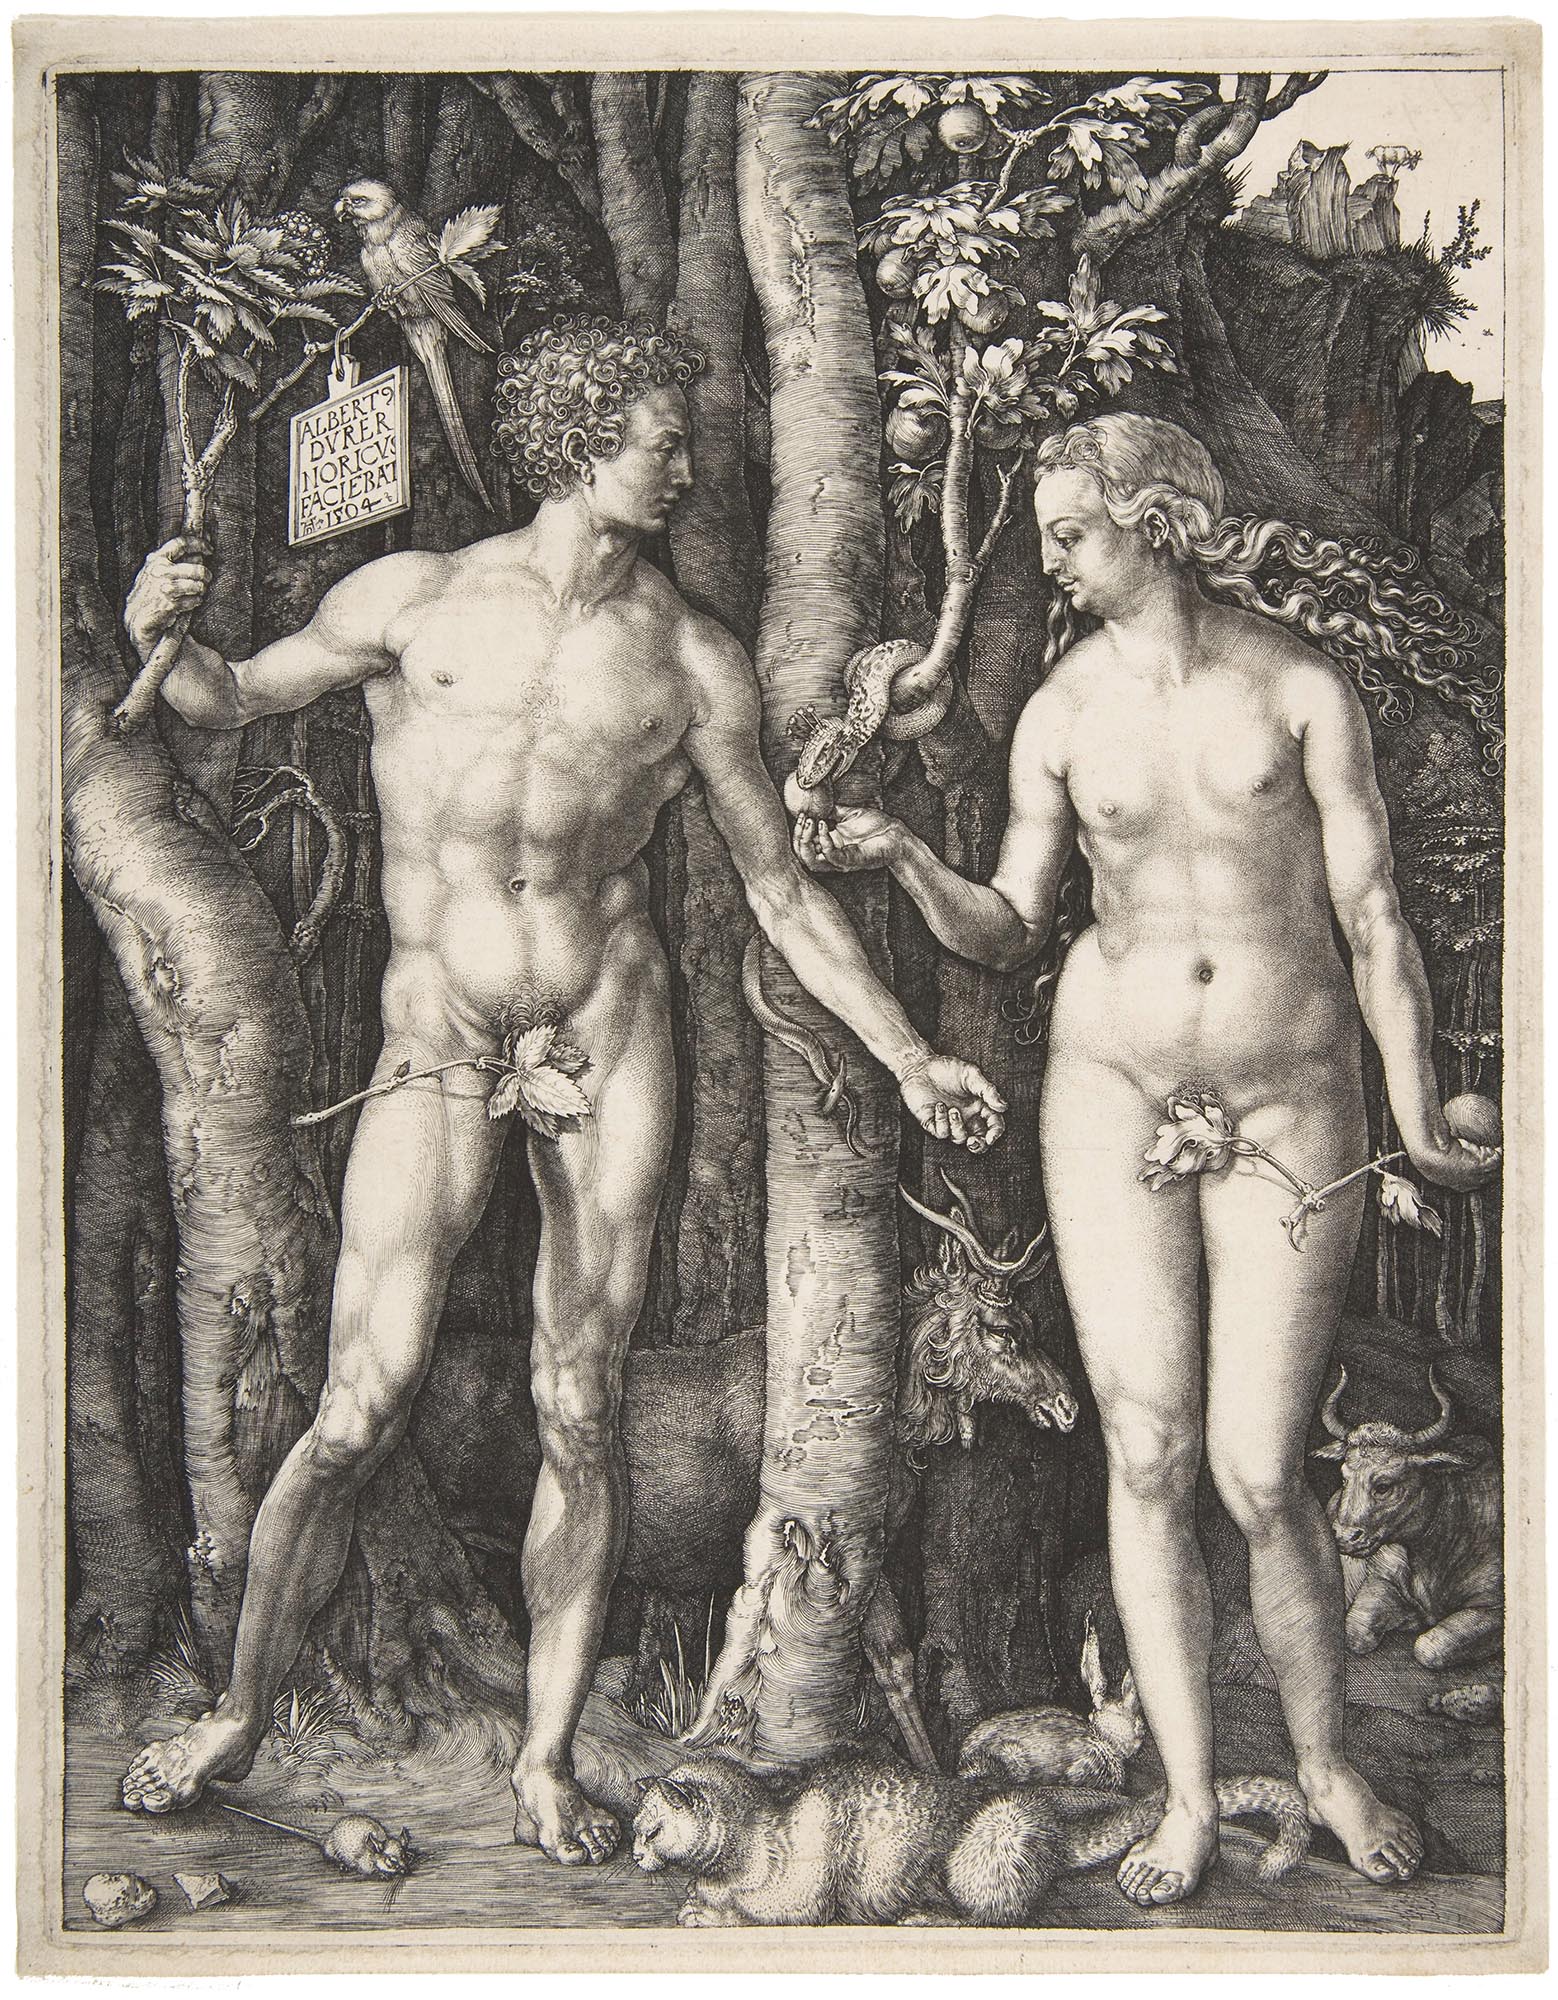 Albrecht Dürer, Adam and Eve, 1504, engraving, 25.1 x 20cm (The Metropolitan Museum of Art)